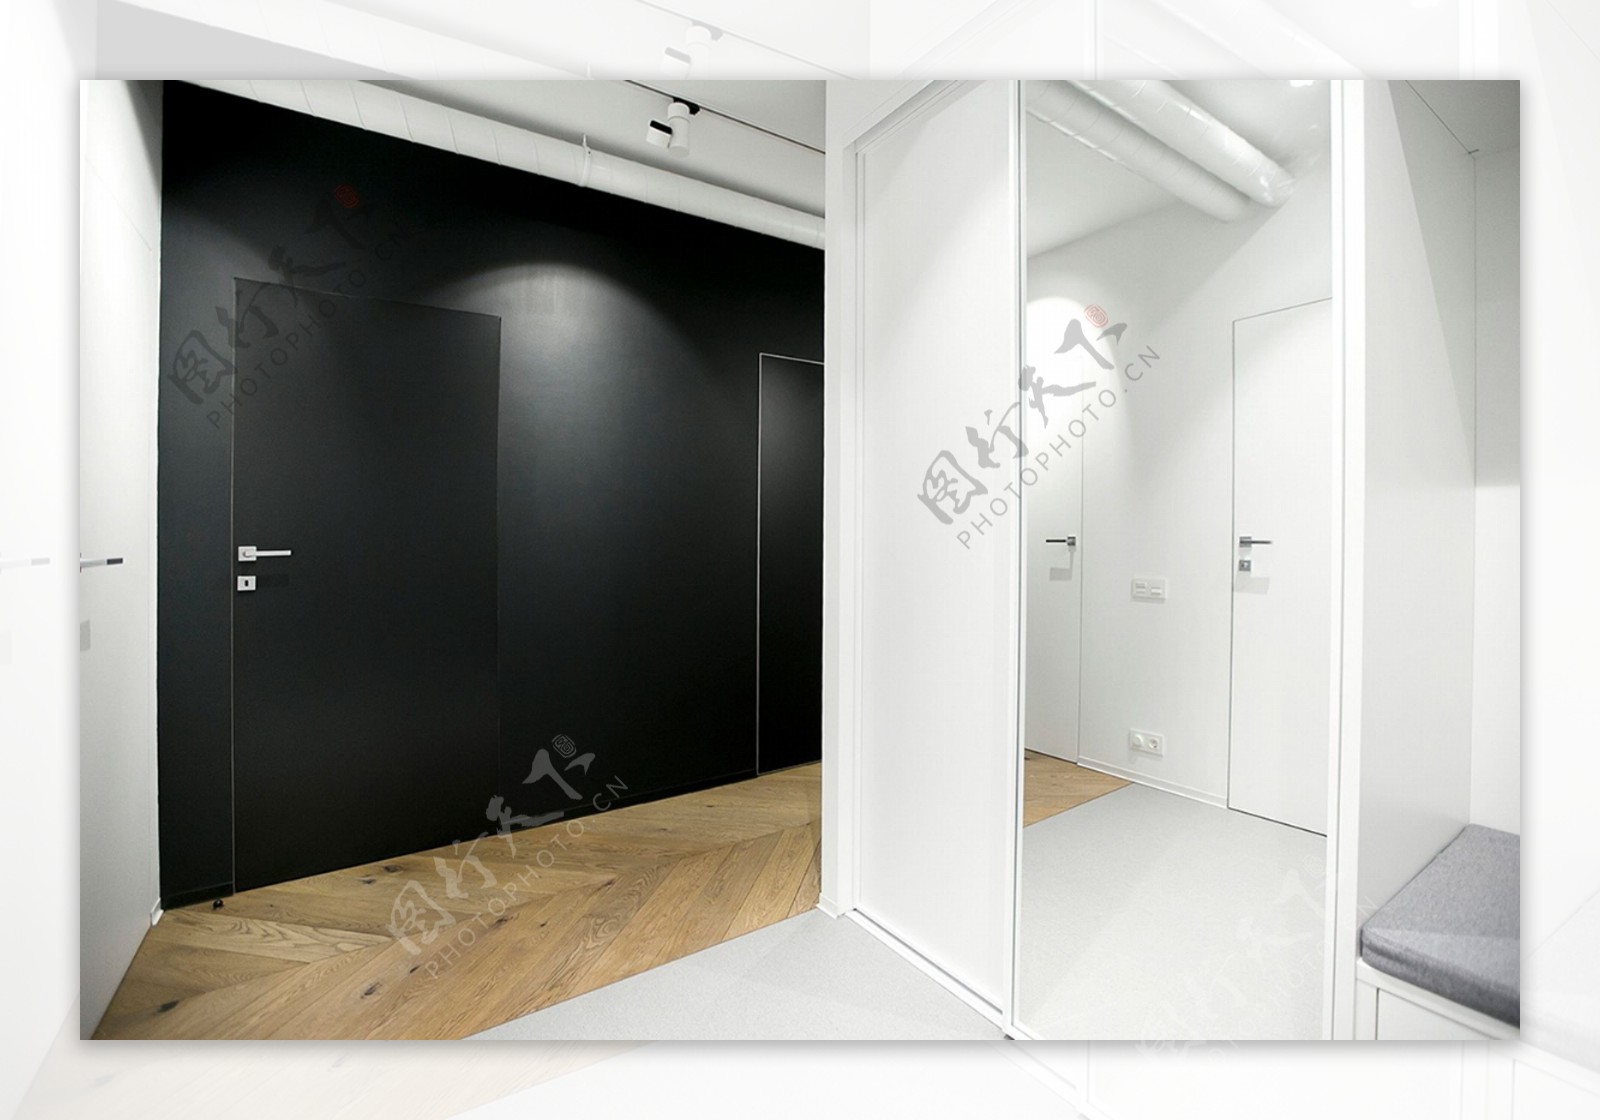 现代低调客厅黑色亮面门室内装修效果图